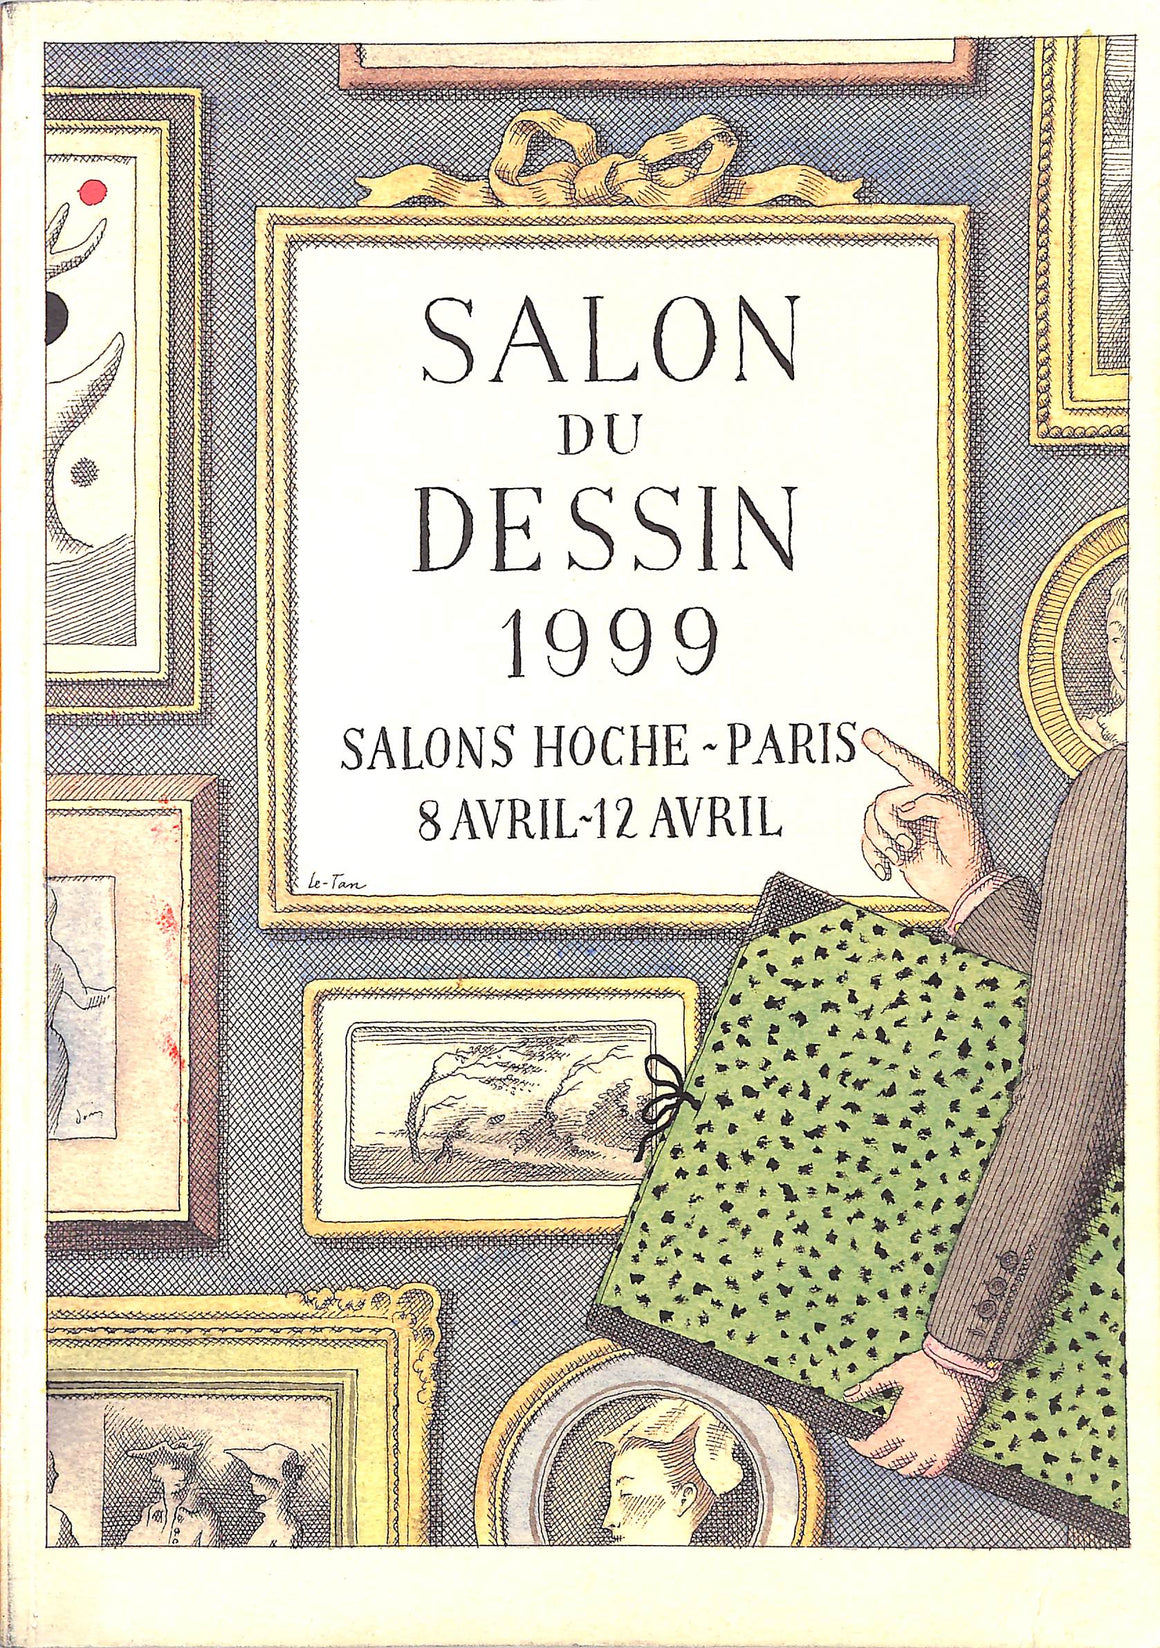 "Salon Du Dessin 1999 / Pierre Le-Tan"